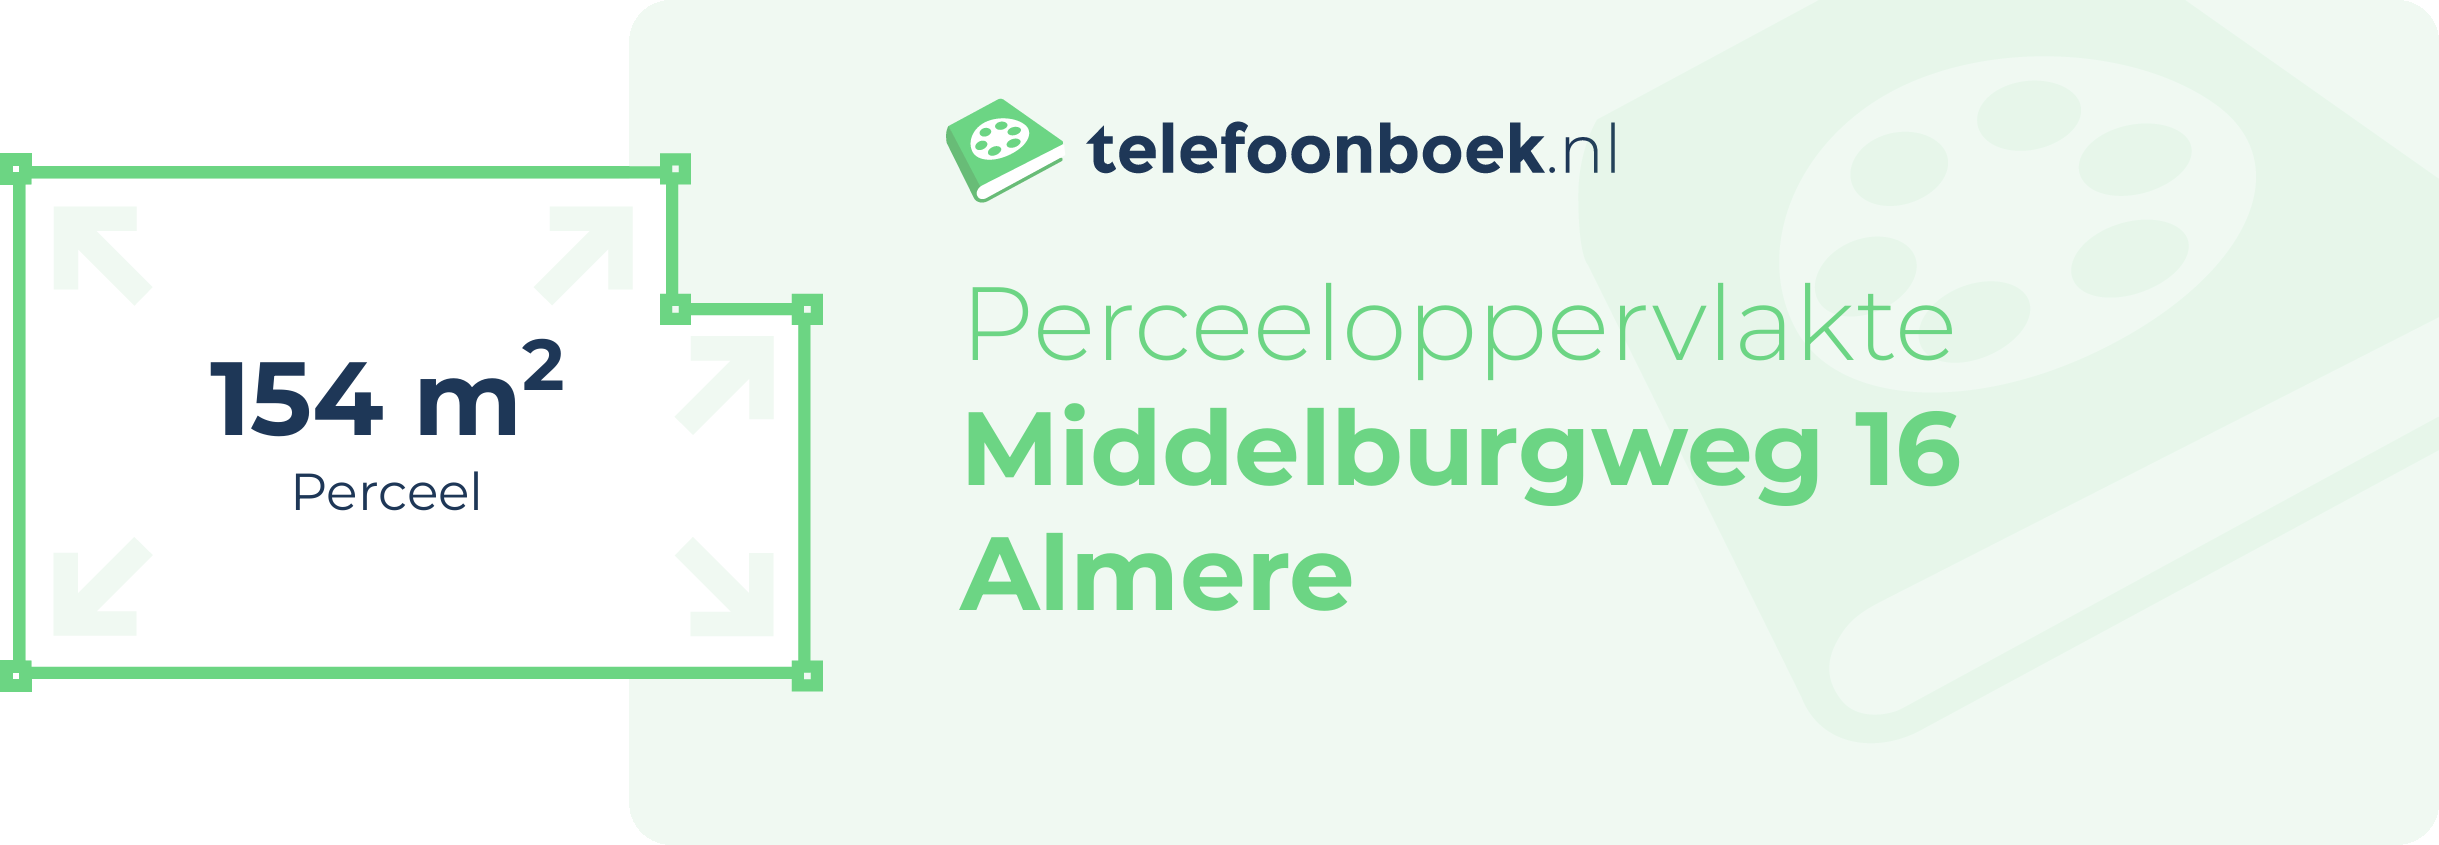 Perceeloppervlakte Middelburgweg 16 Almere